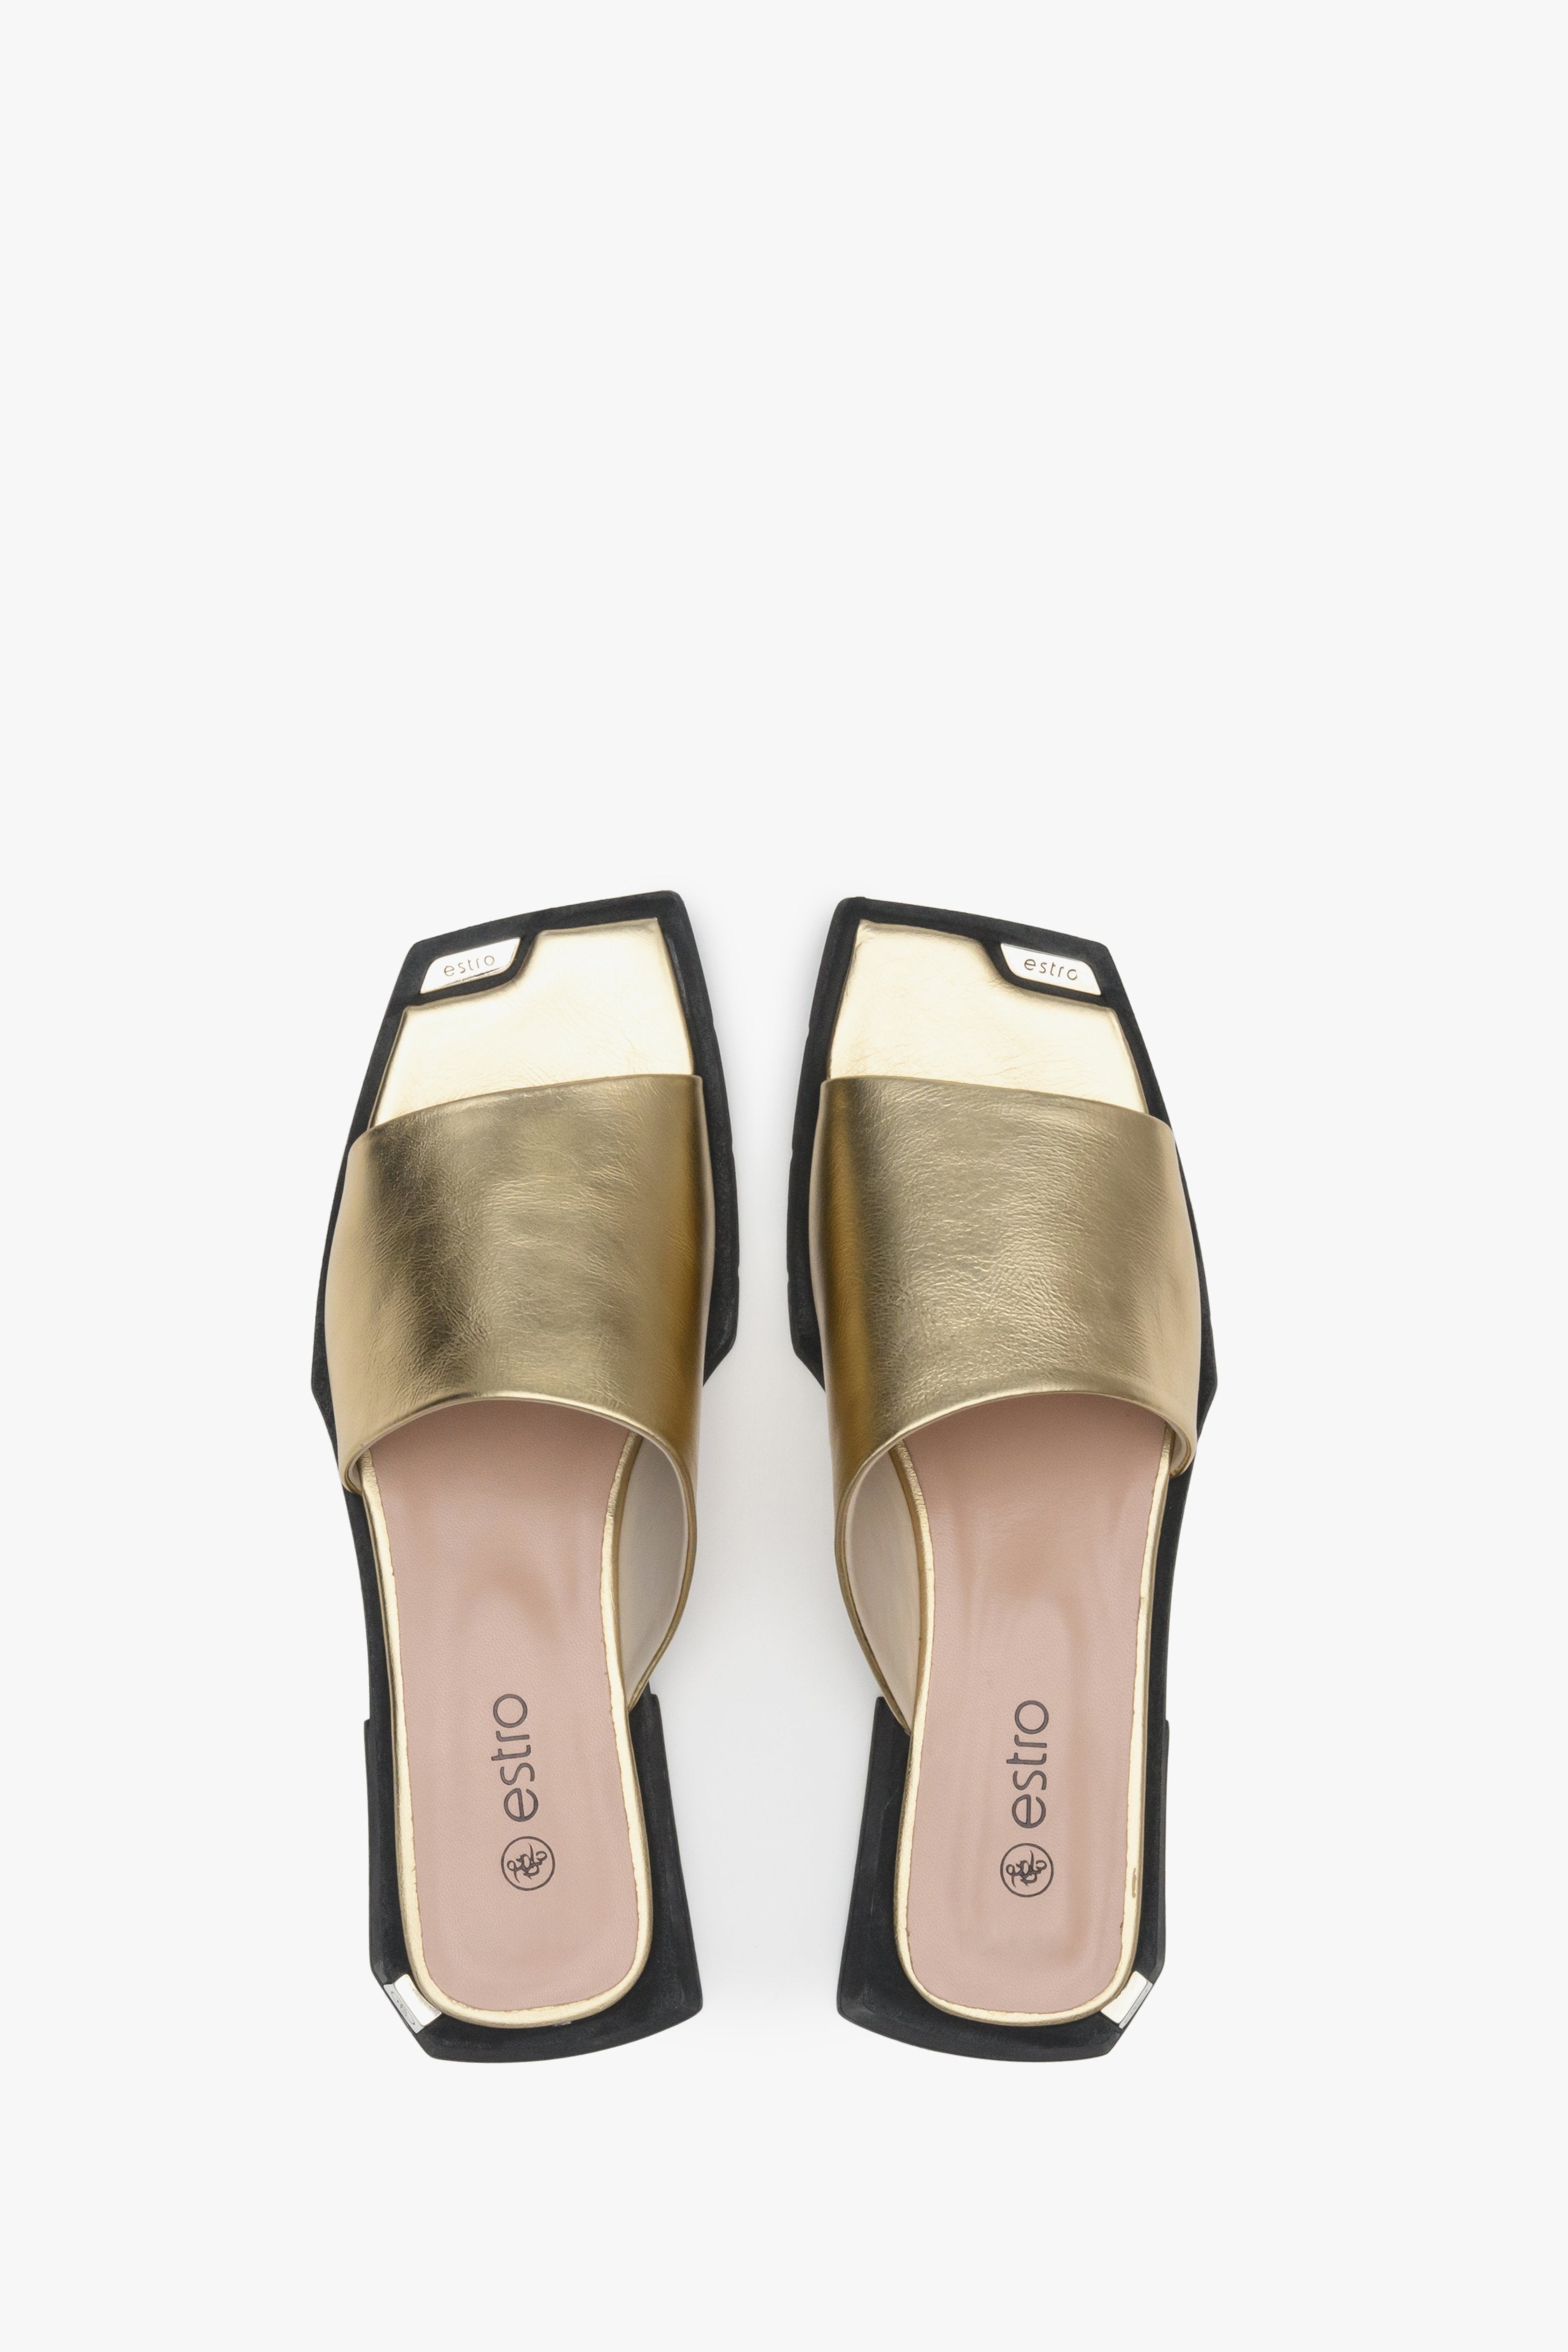 Skórzane klapki damskie na lato marki Estro w kolorze złotym - prezentacja obuwia z góry.